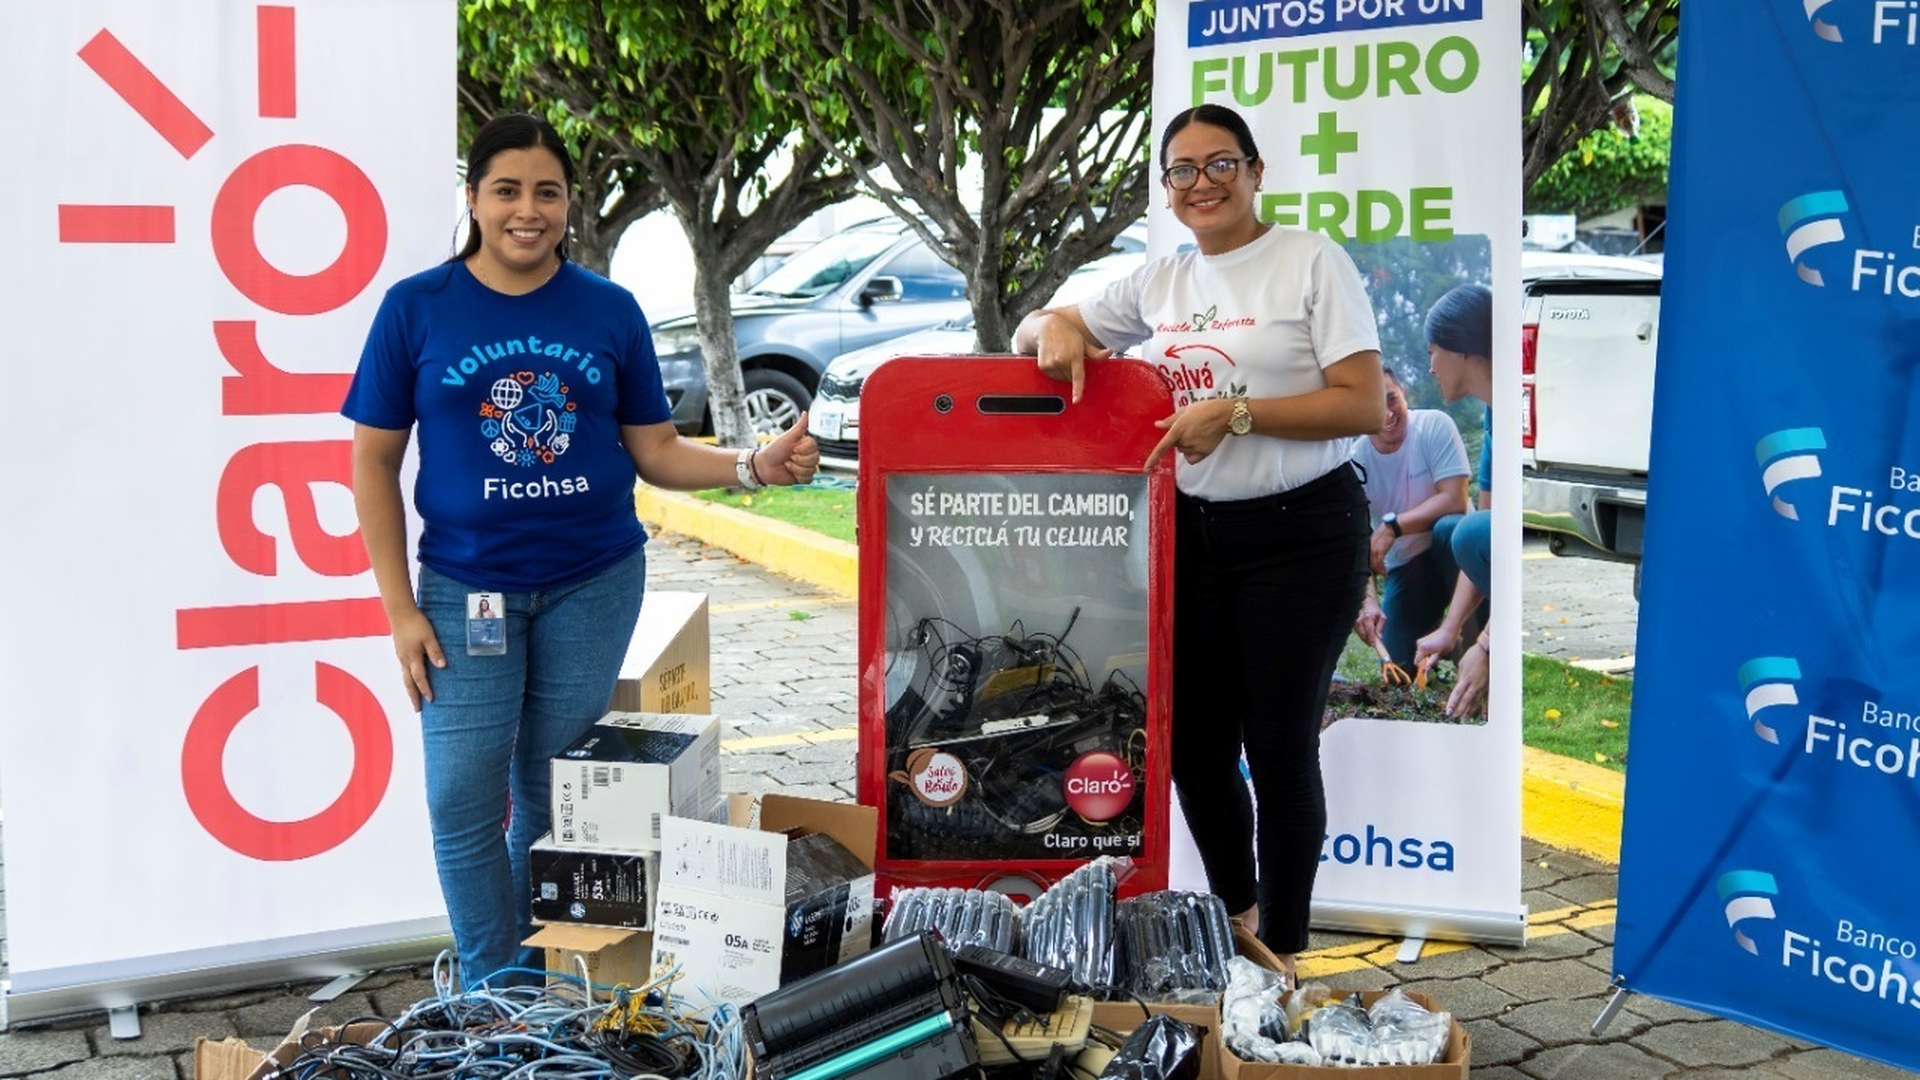 Este año, Claro organizó campañas de reciclaje en empresas de reconocimiento nacional como Banco Ficohsa, quienes se suman a la iniciativa ecoamigable que convertirá la basura electrónica en vida.